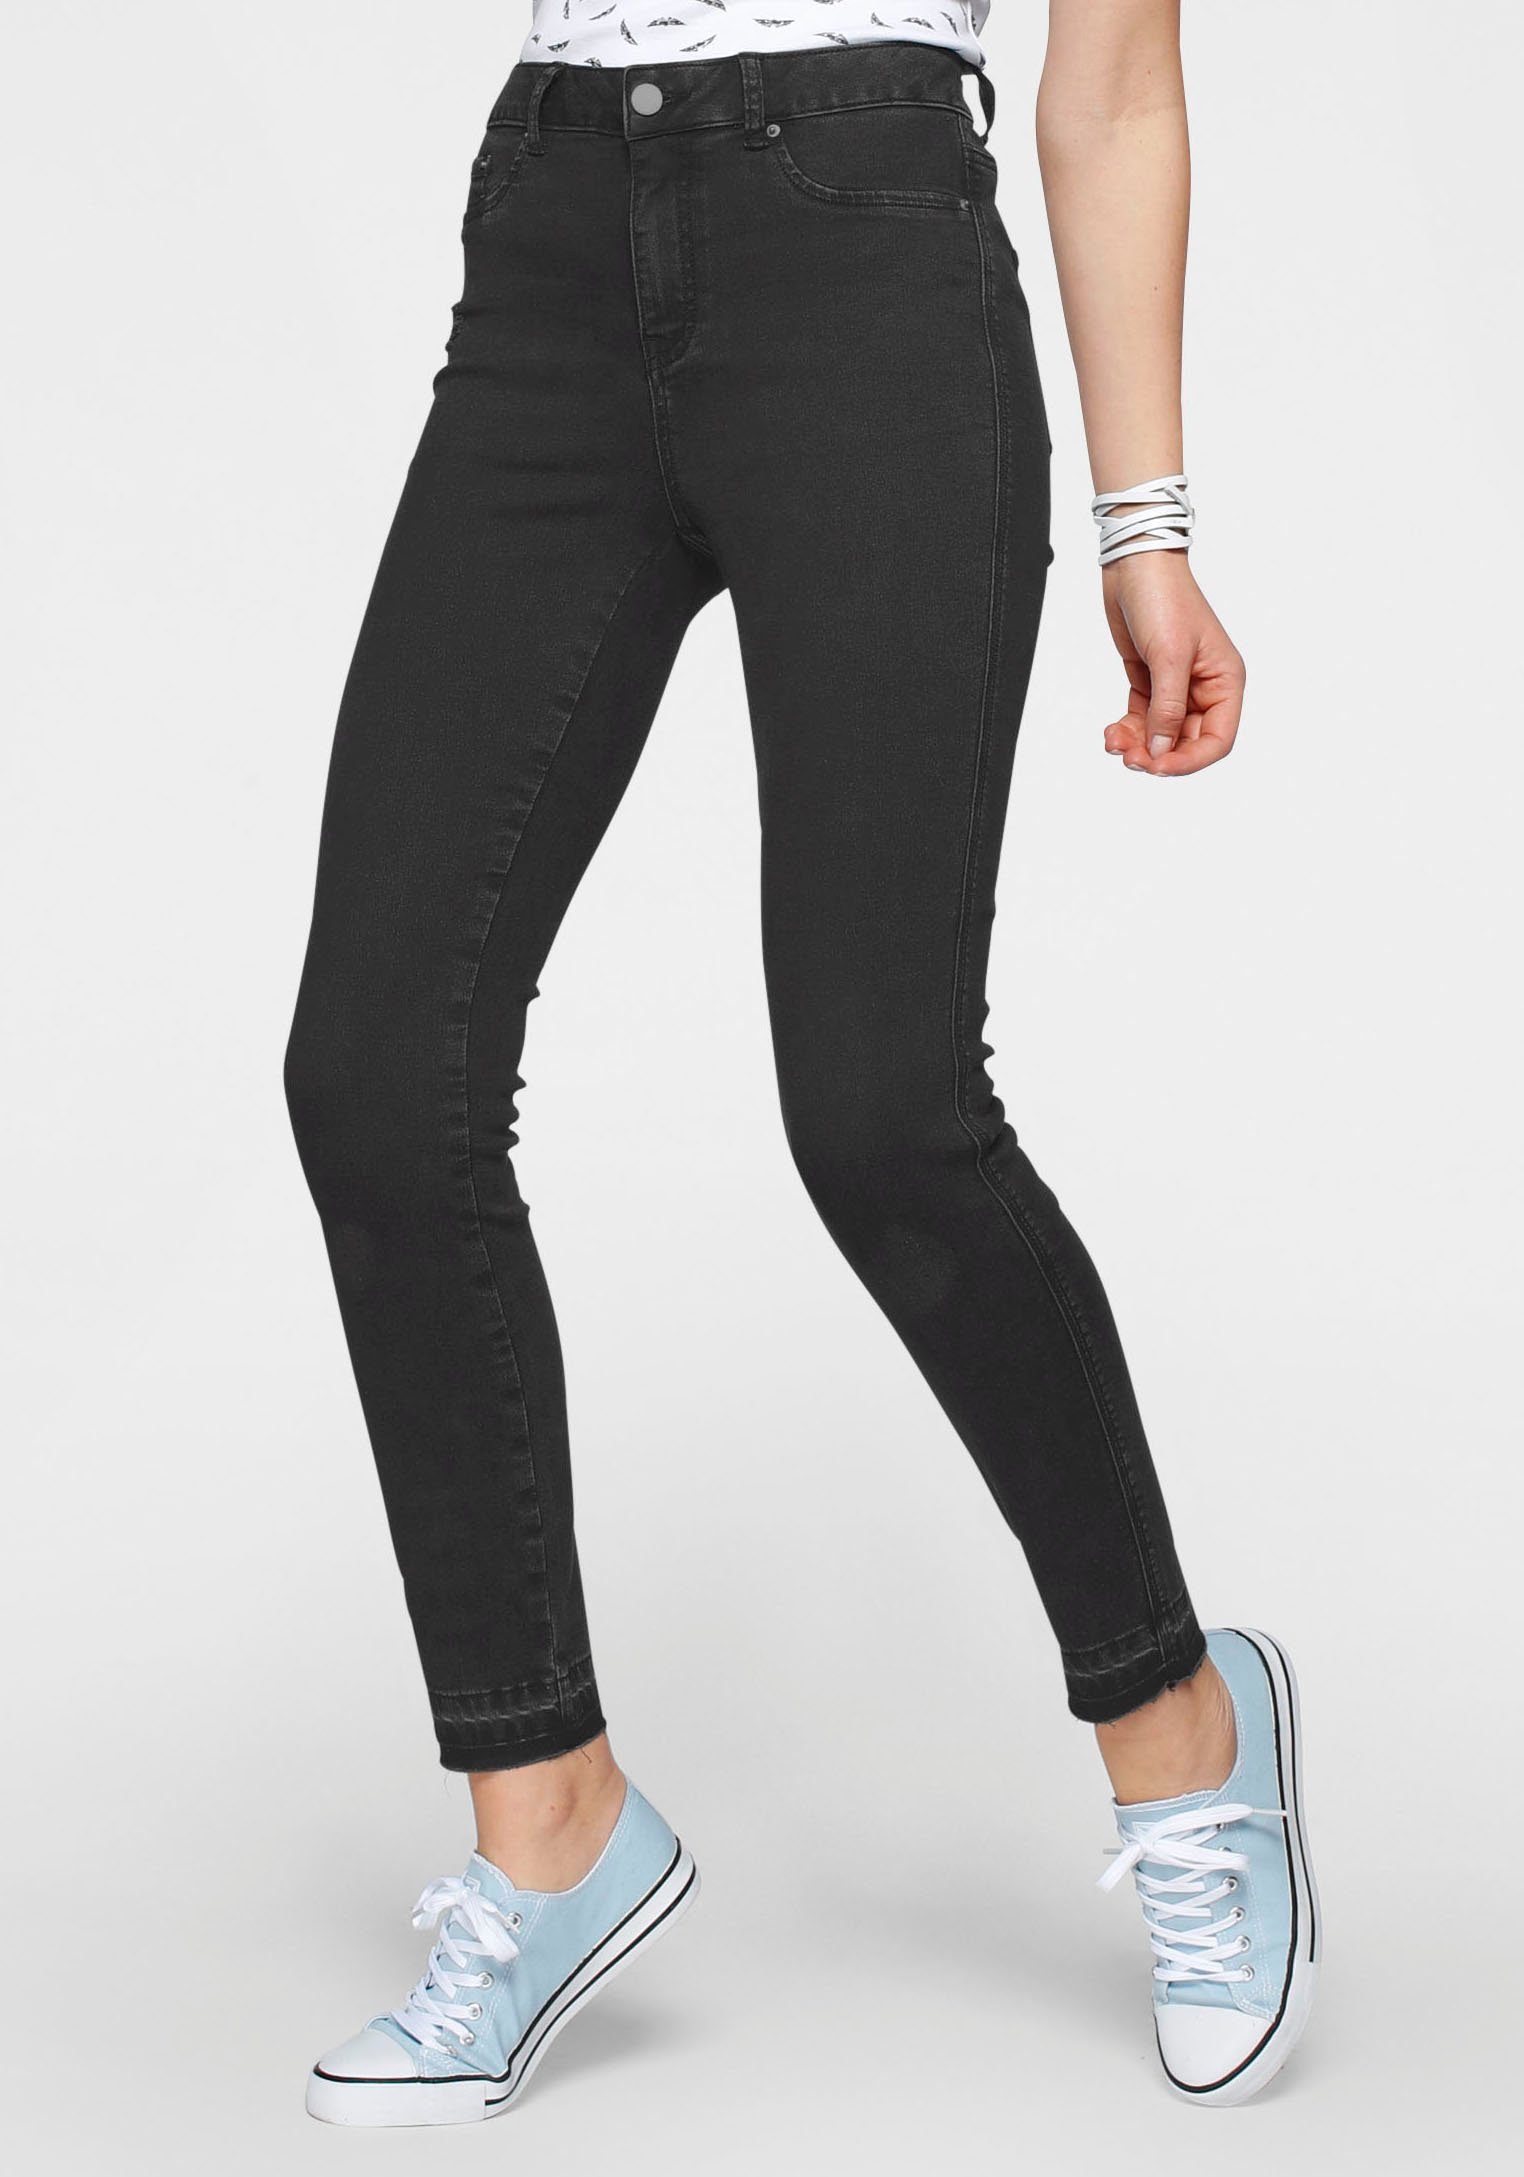 Arizona Skinny-fit-Jeans Ultra Stretch offenem dark-grey Saum Waist High mit